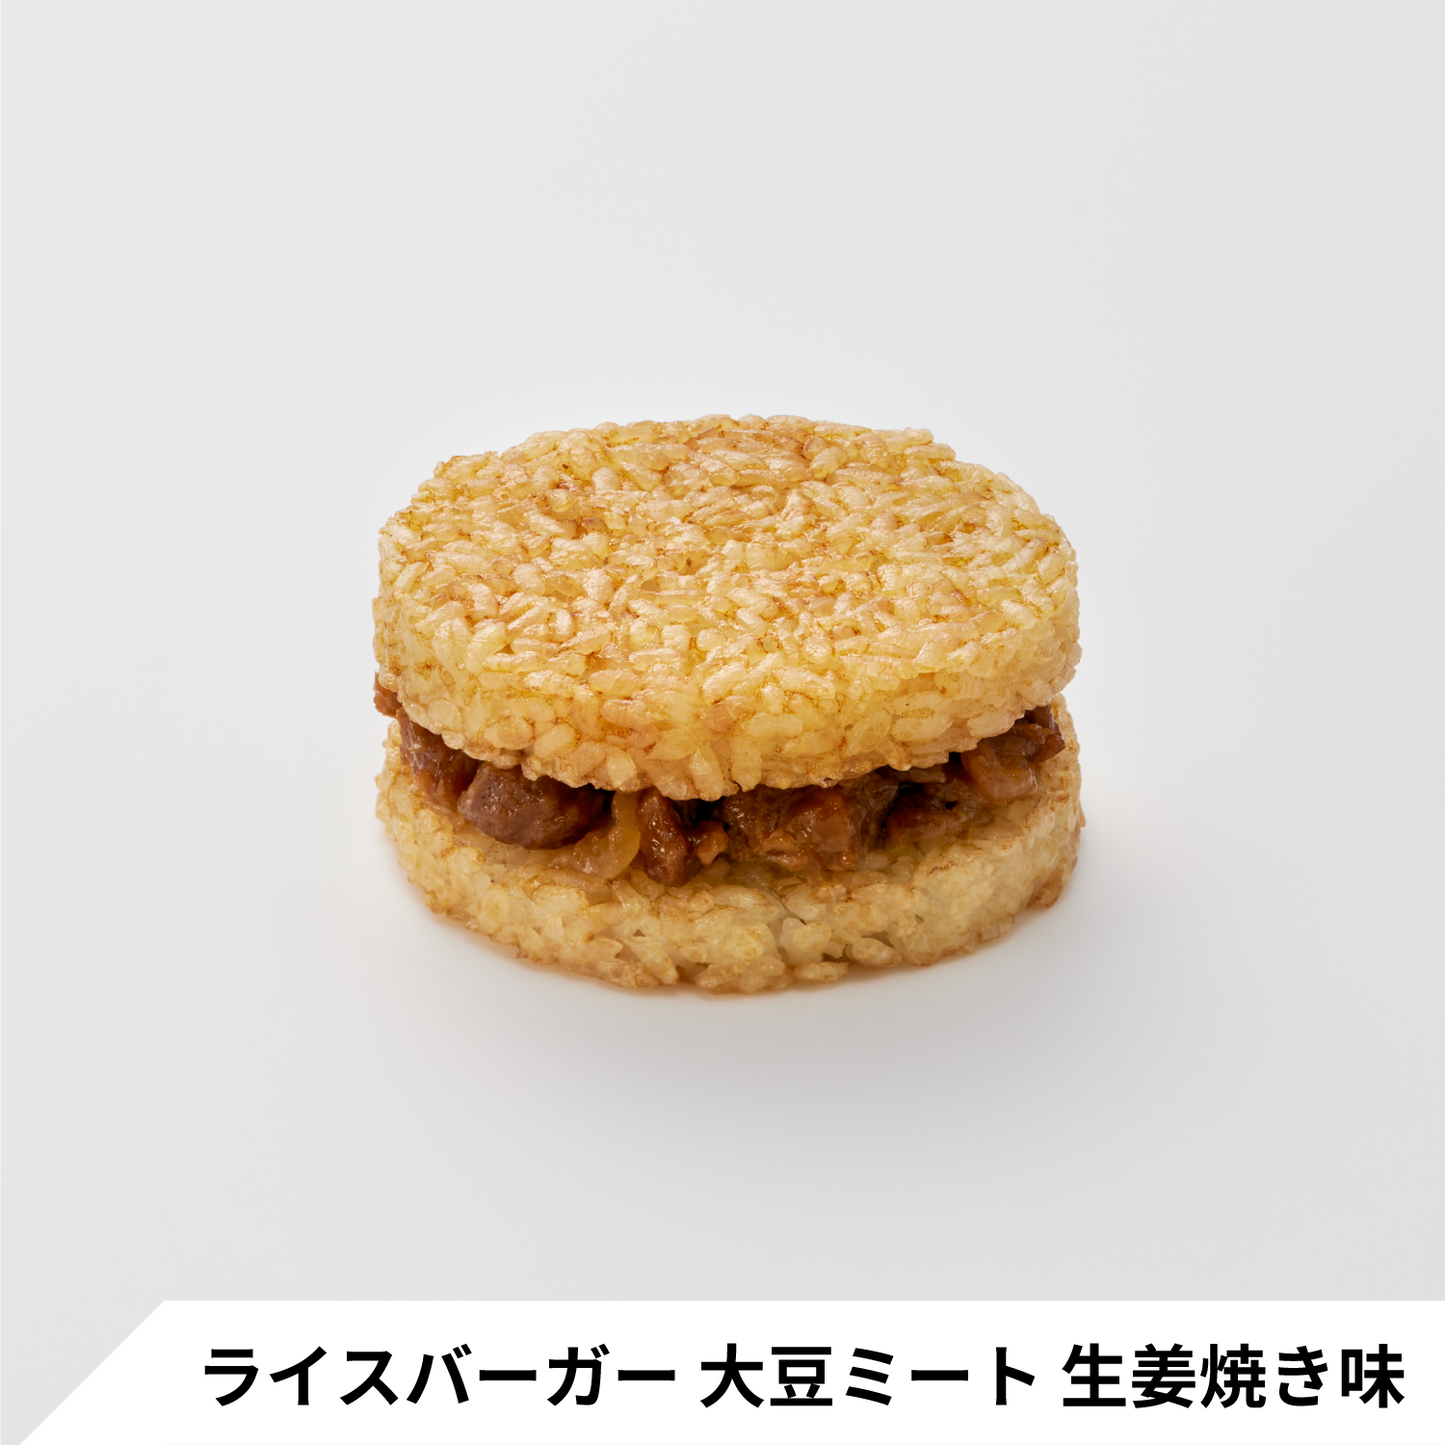 【プラントベース】ライスバーガー2種 食べ比べセット